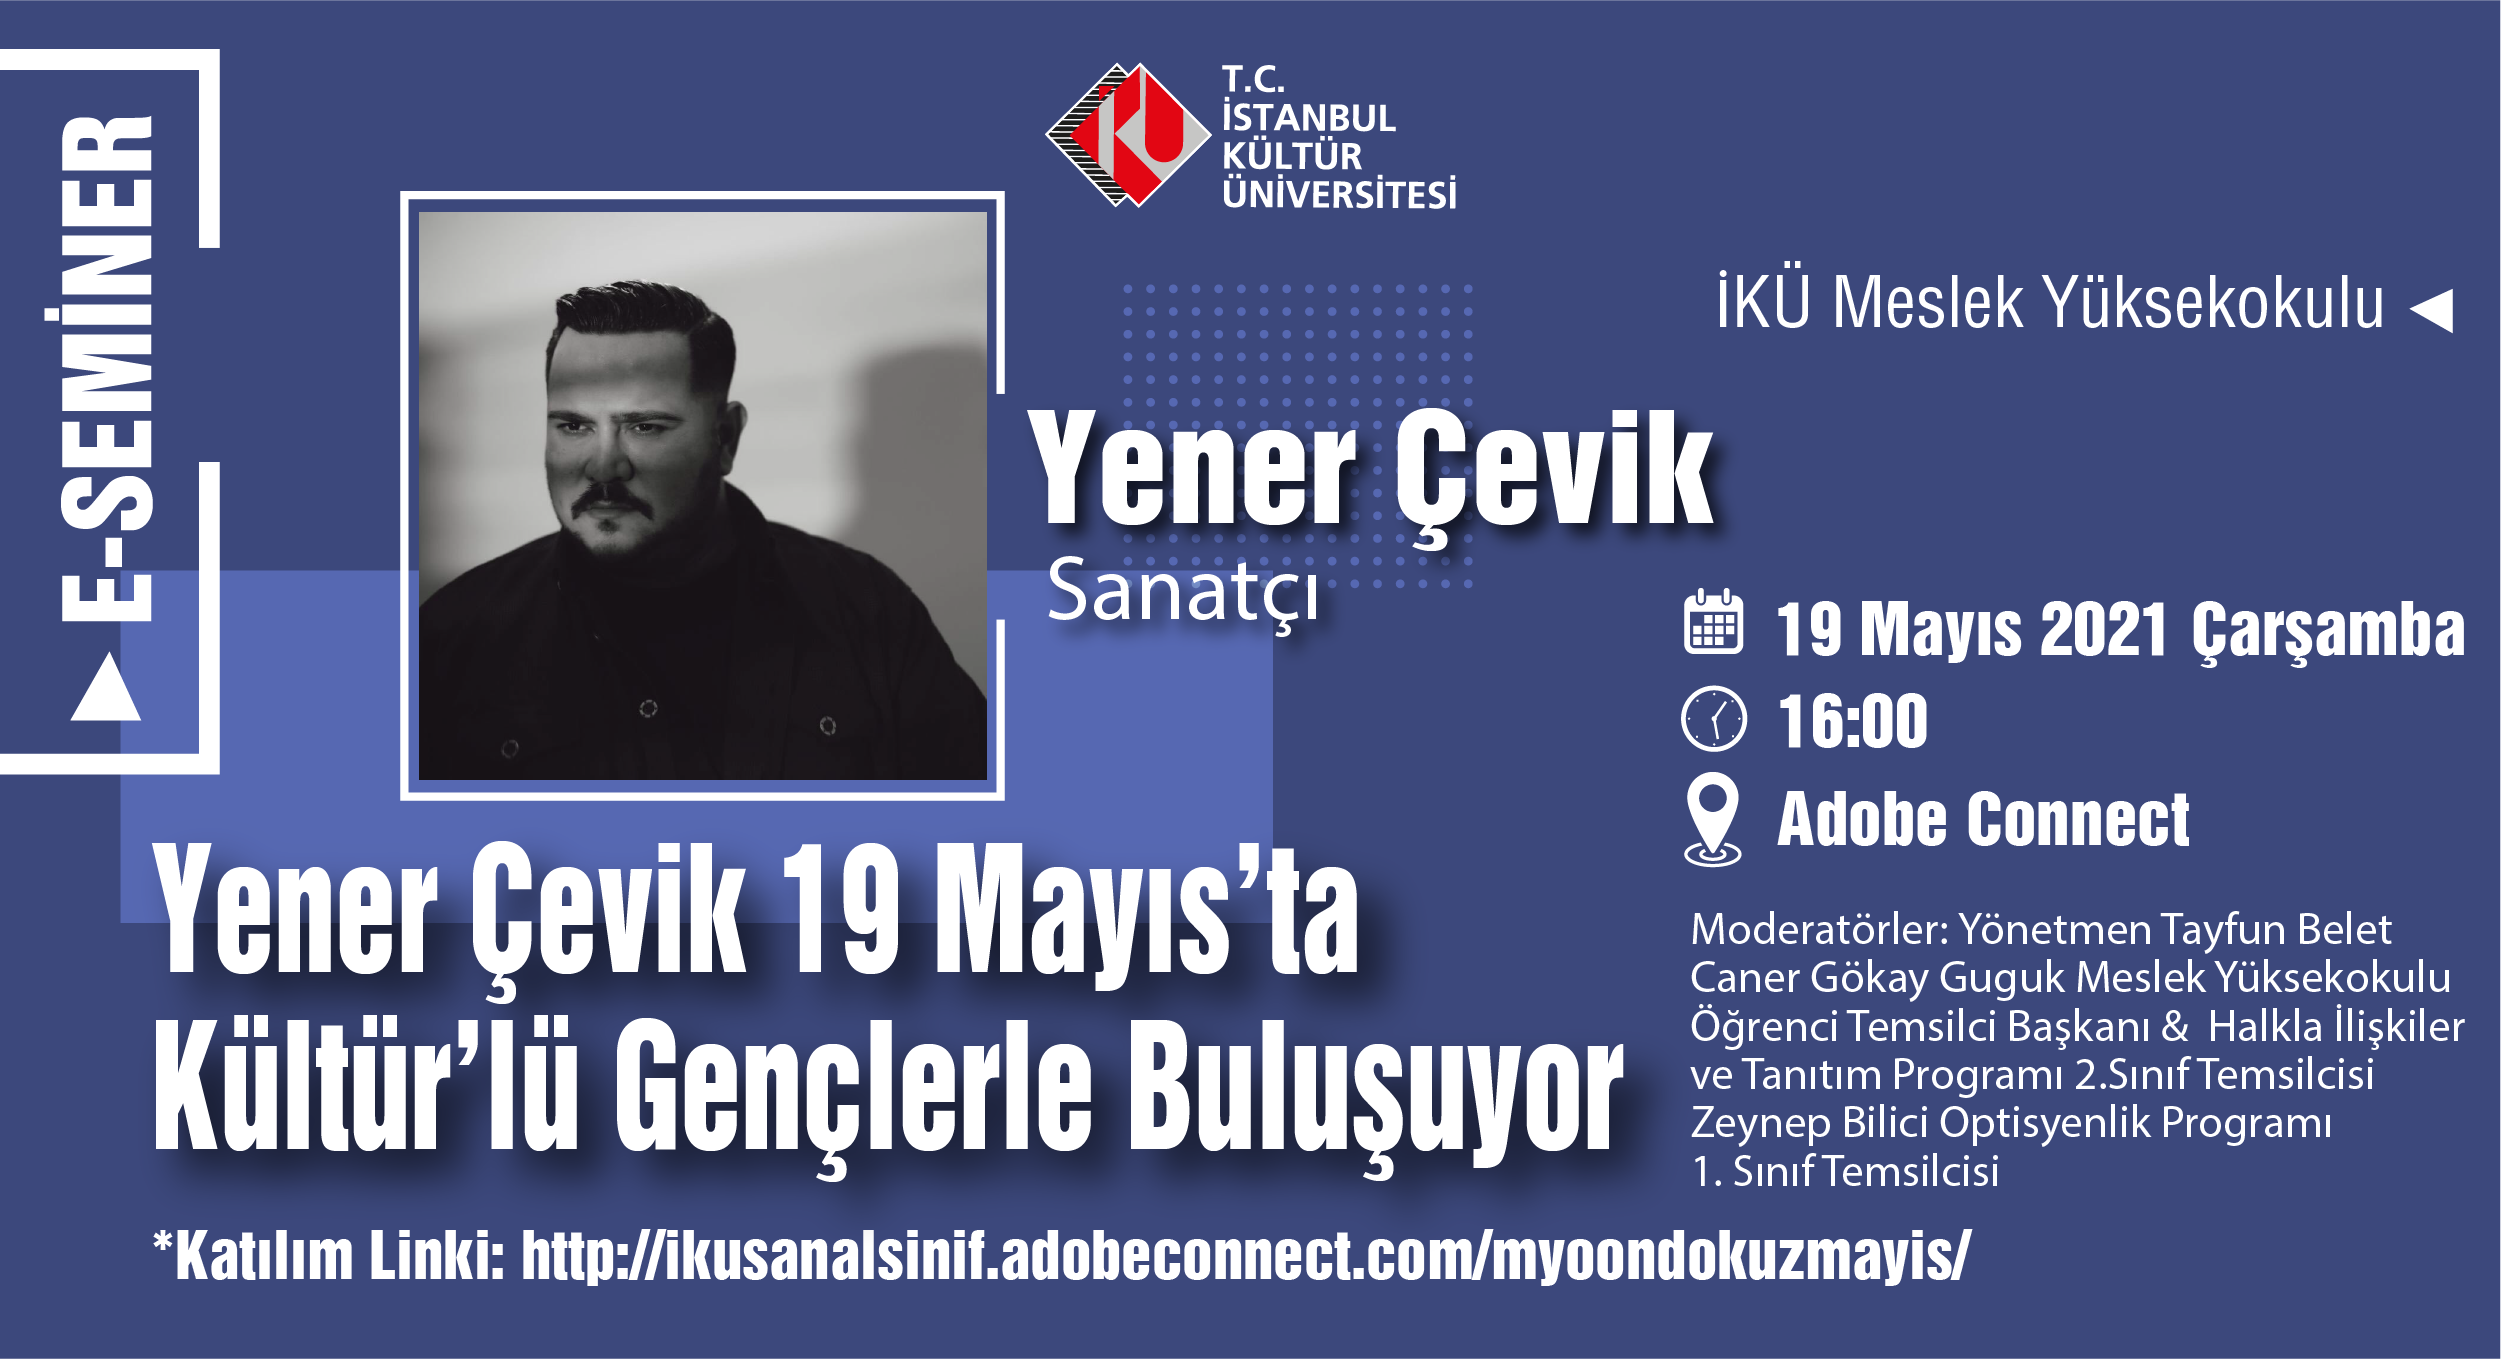 “Yener Çevik 19 Mayıs’ta Kültür’lü Gençlerle Buluşuyor”